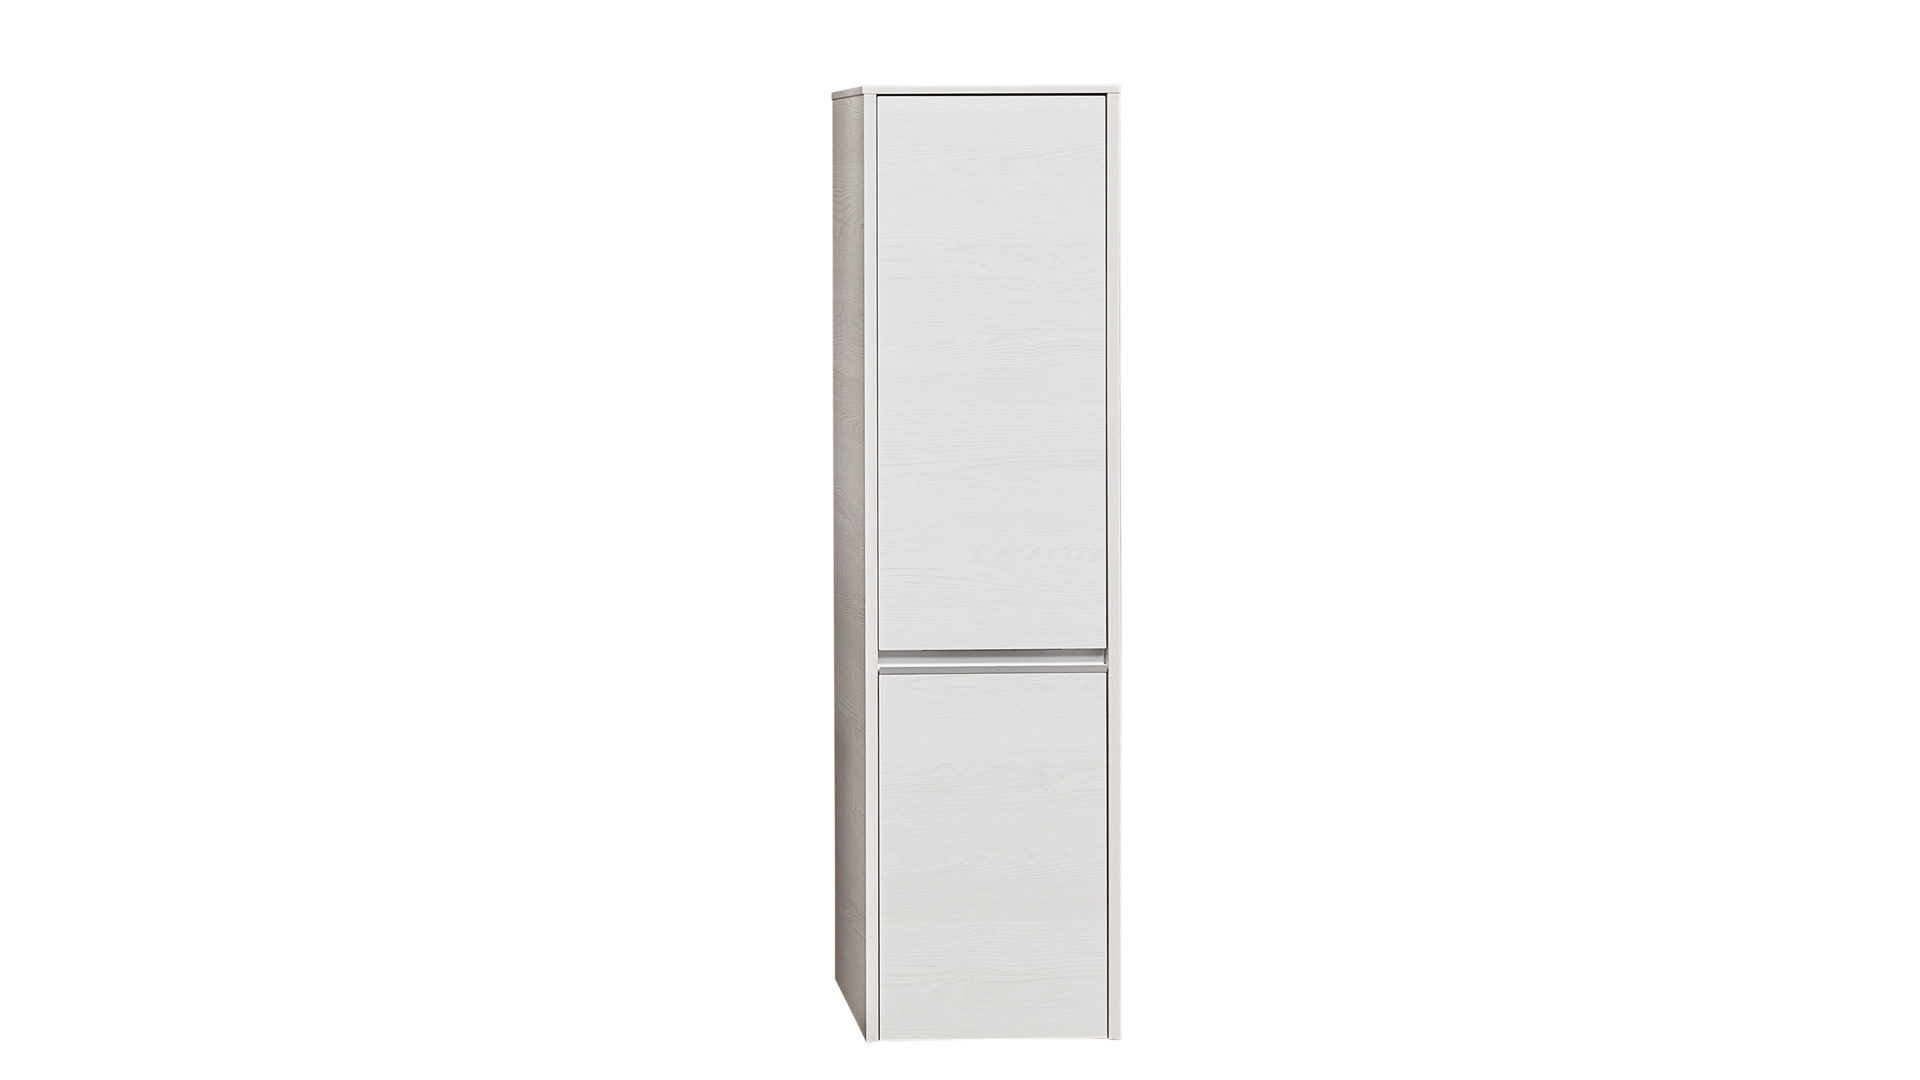 Hochschrank Pelipal aus Holz in Weiß pelipal Bad-Midischrank Serie 6040 weiße eichefarbene Kunststoffoberflächen – zwei Türen